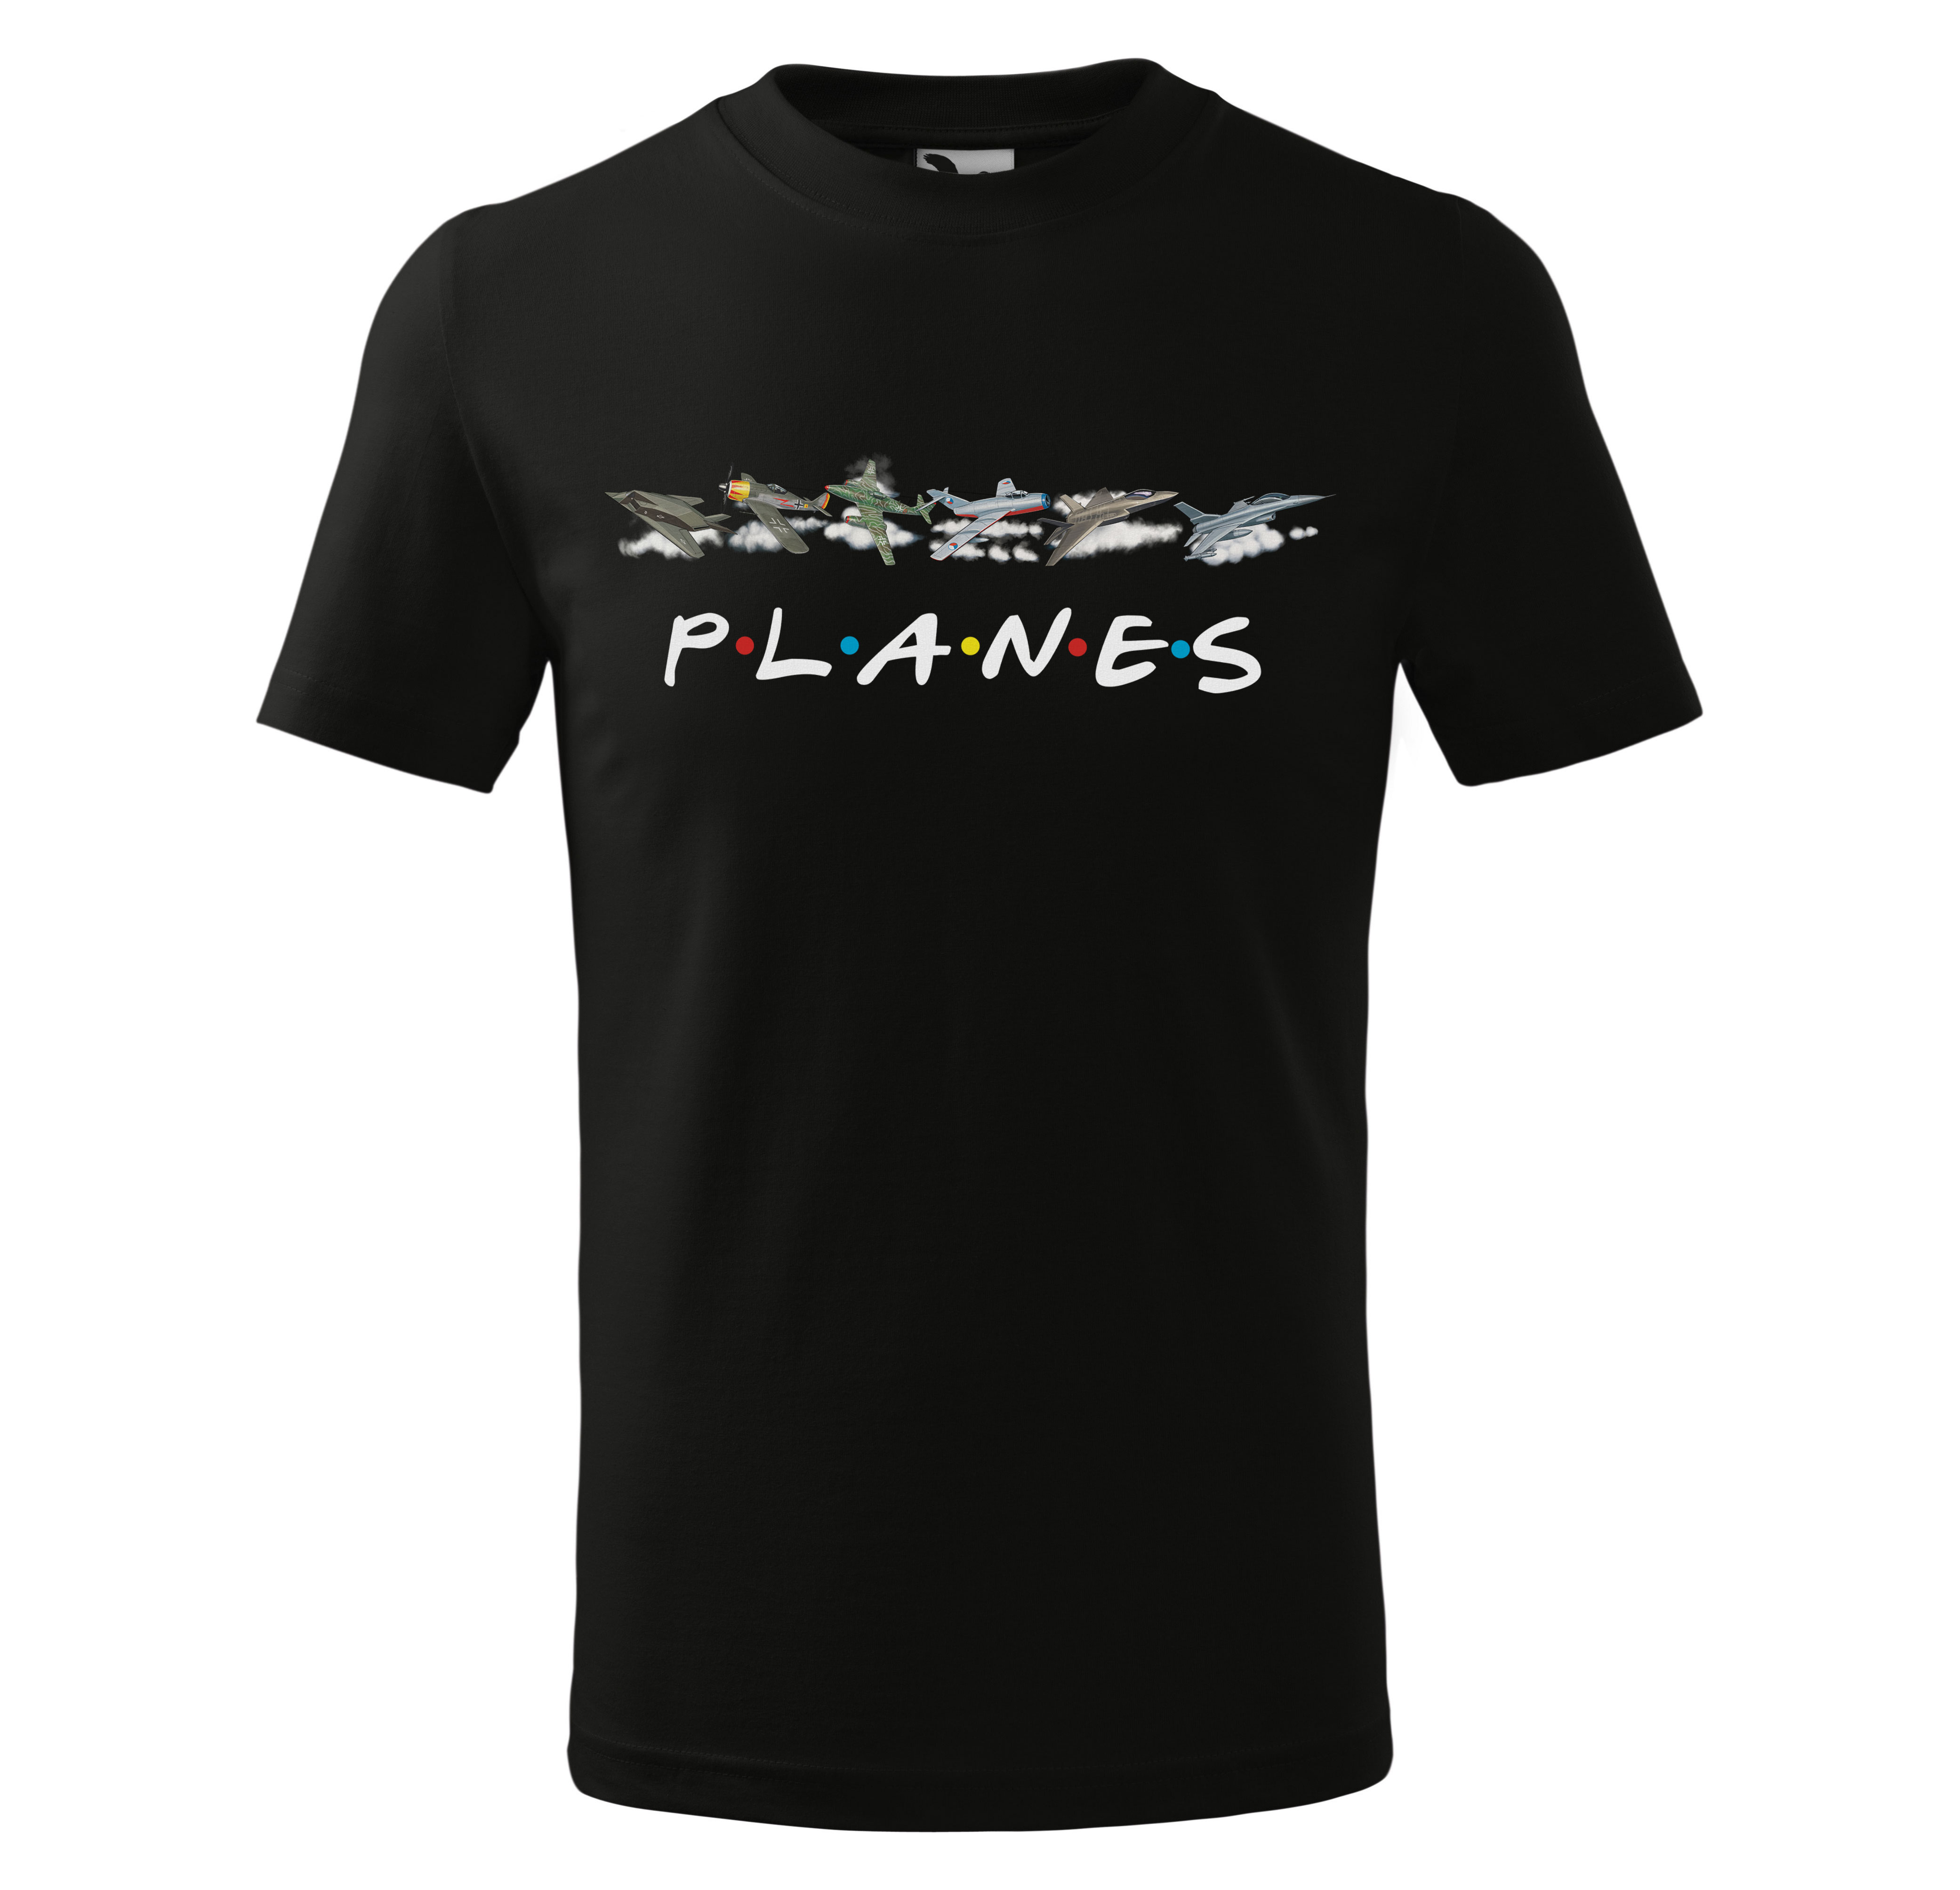 Tričko Planes - dětské (Velikost: 110, Barva trička: Černá)